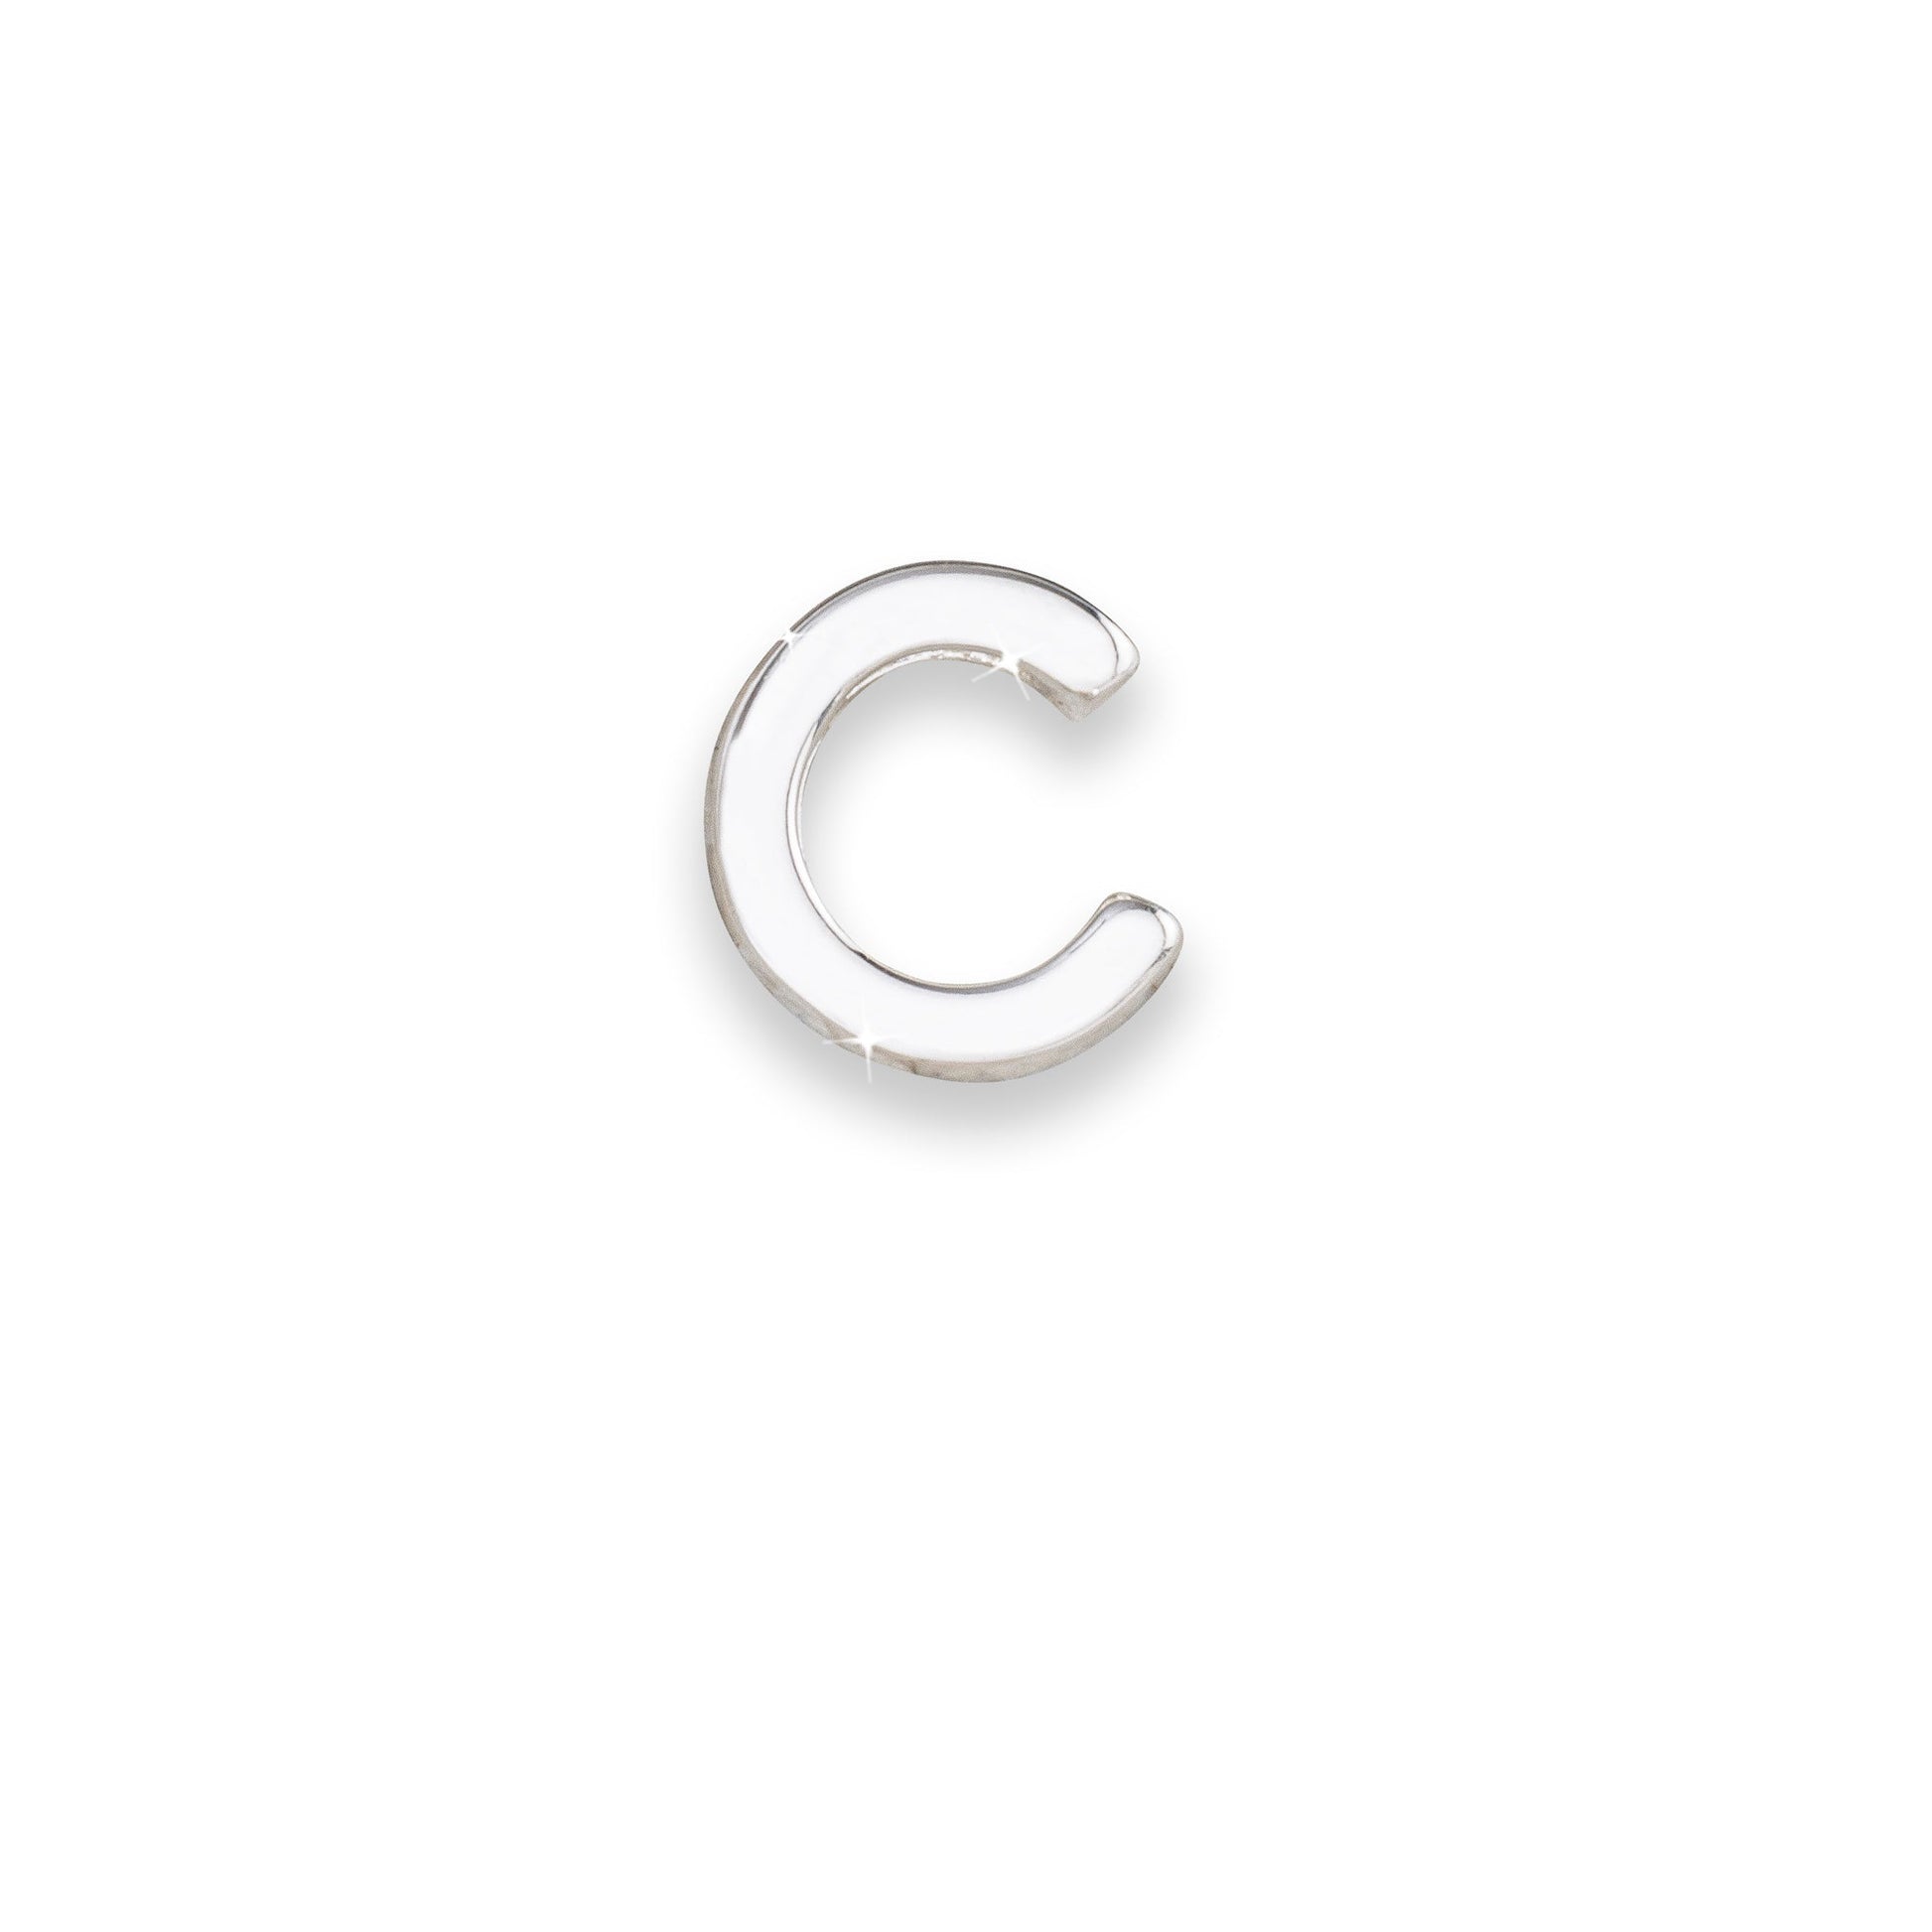 Silver letter C monogram charm for necklaces & bracelets